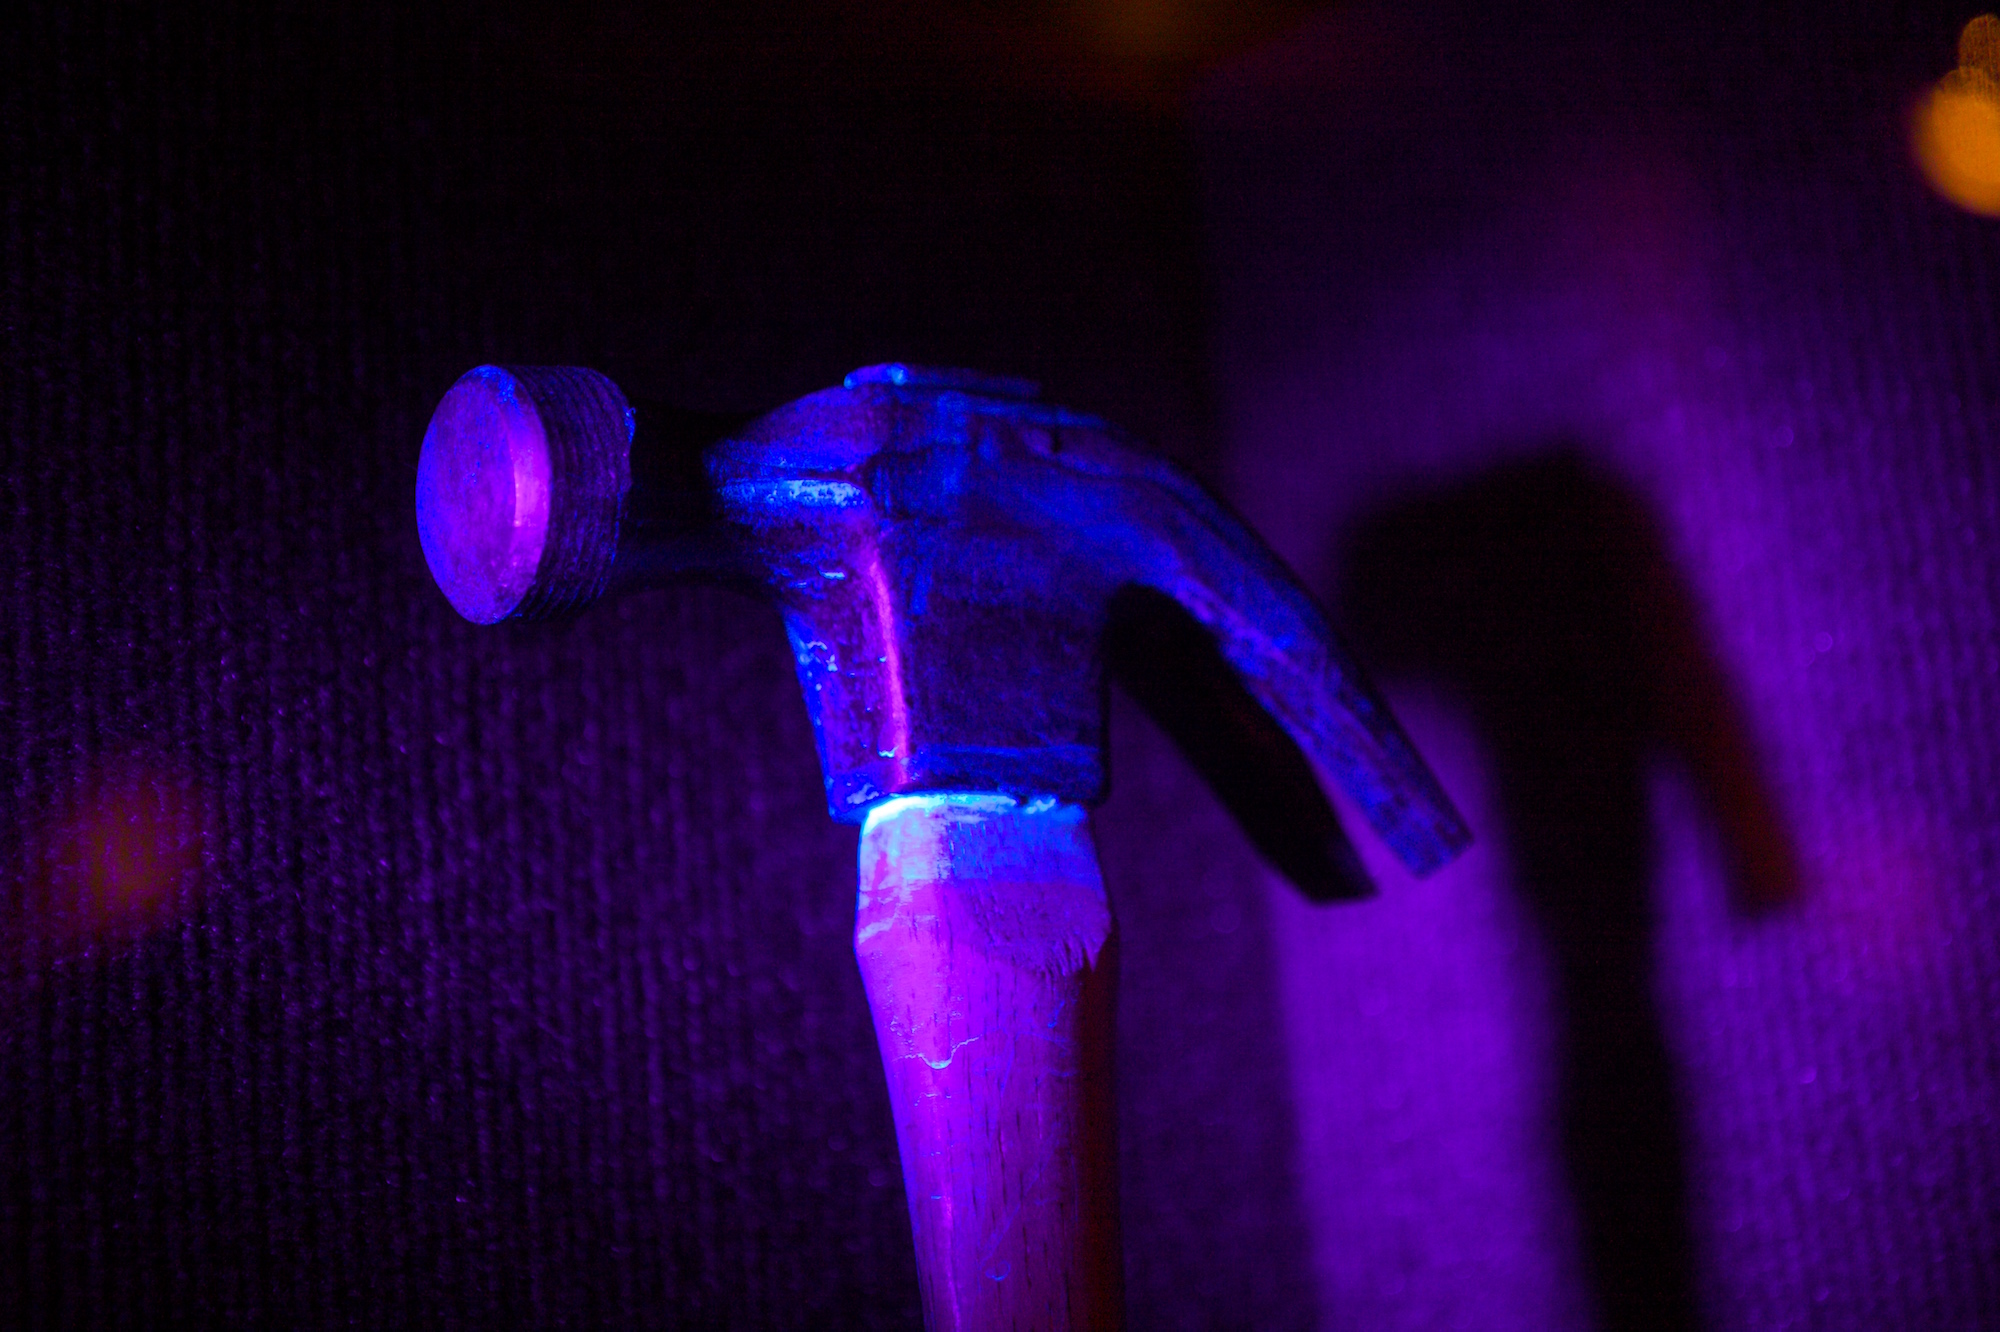 Grâce à sa chimiluminescence, le luminol révèle des traces de sang sur ce marteau. © Marcin Wichary, Flickr, CC by 2.0